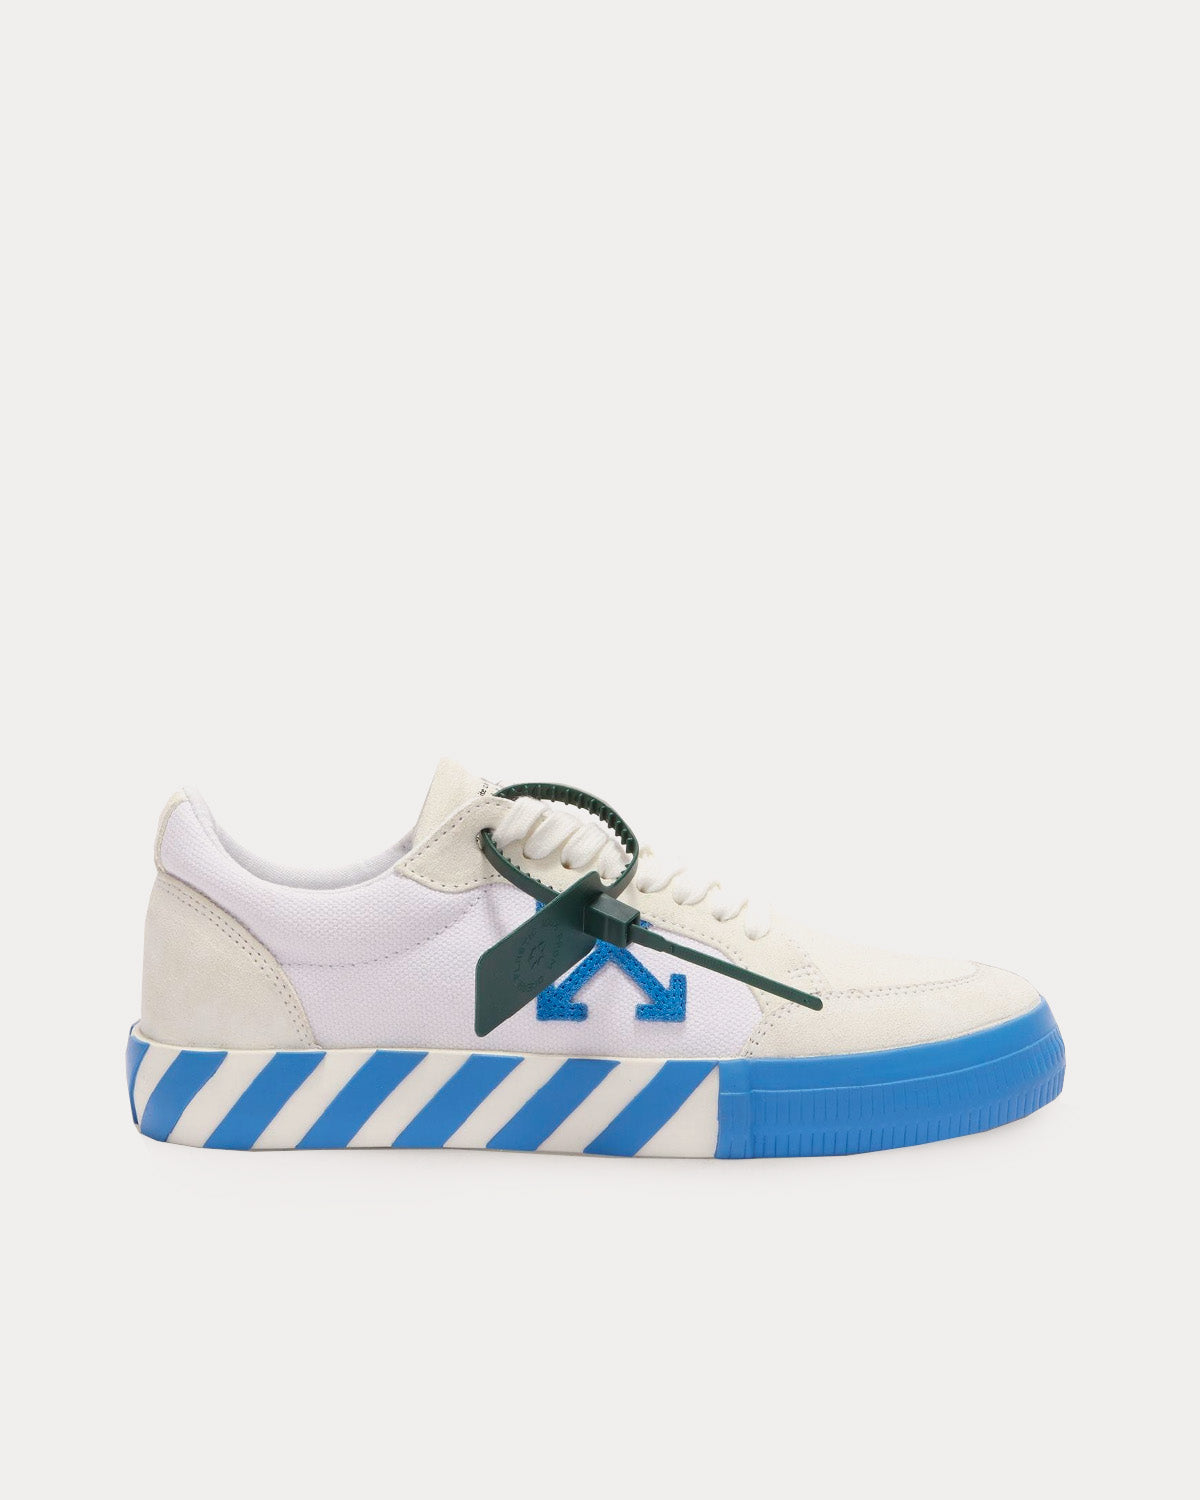 KHADIM Pedro Blue Sneakers Casual Shoe for Boys - 5-7.5 yrs (5240979)